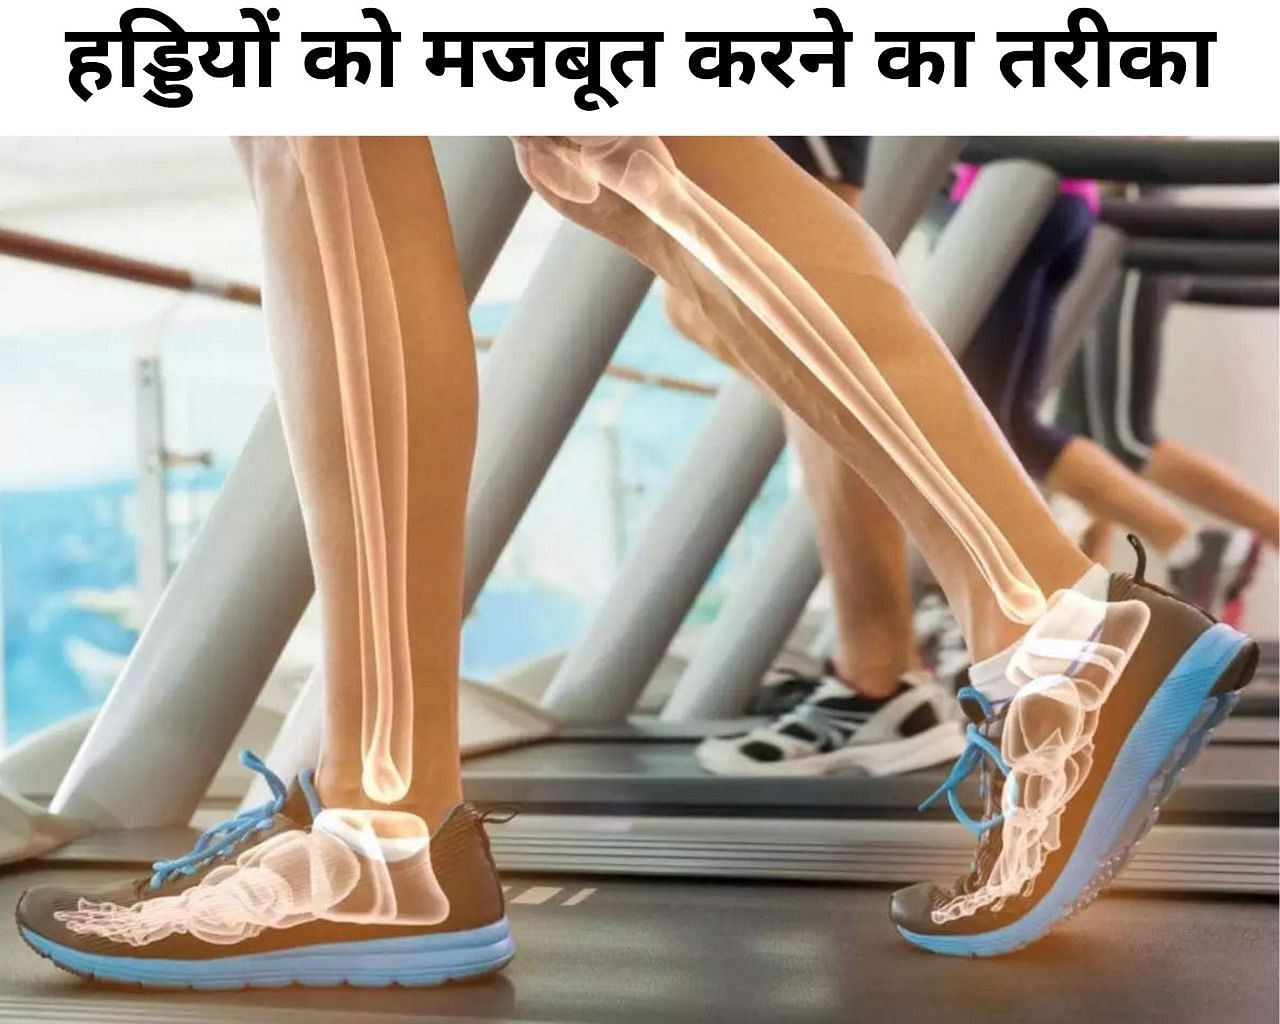 हड्डियों को मजबूत बनाने के लिए डाइट में शामिल करें ये चीजें (फोटो - sportskeeda hindi)